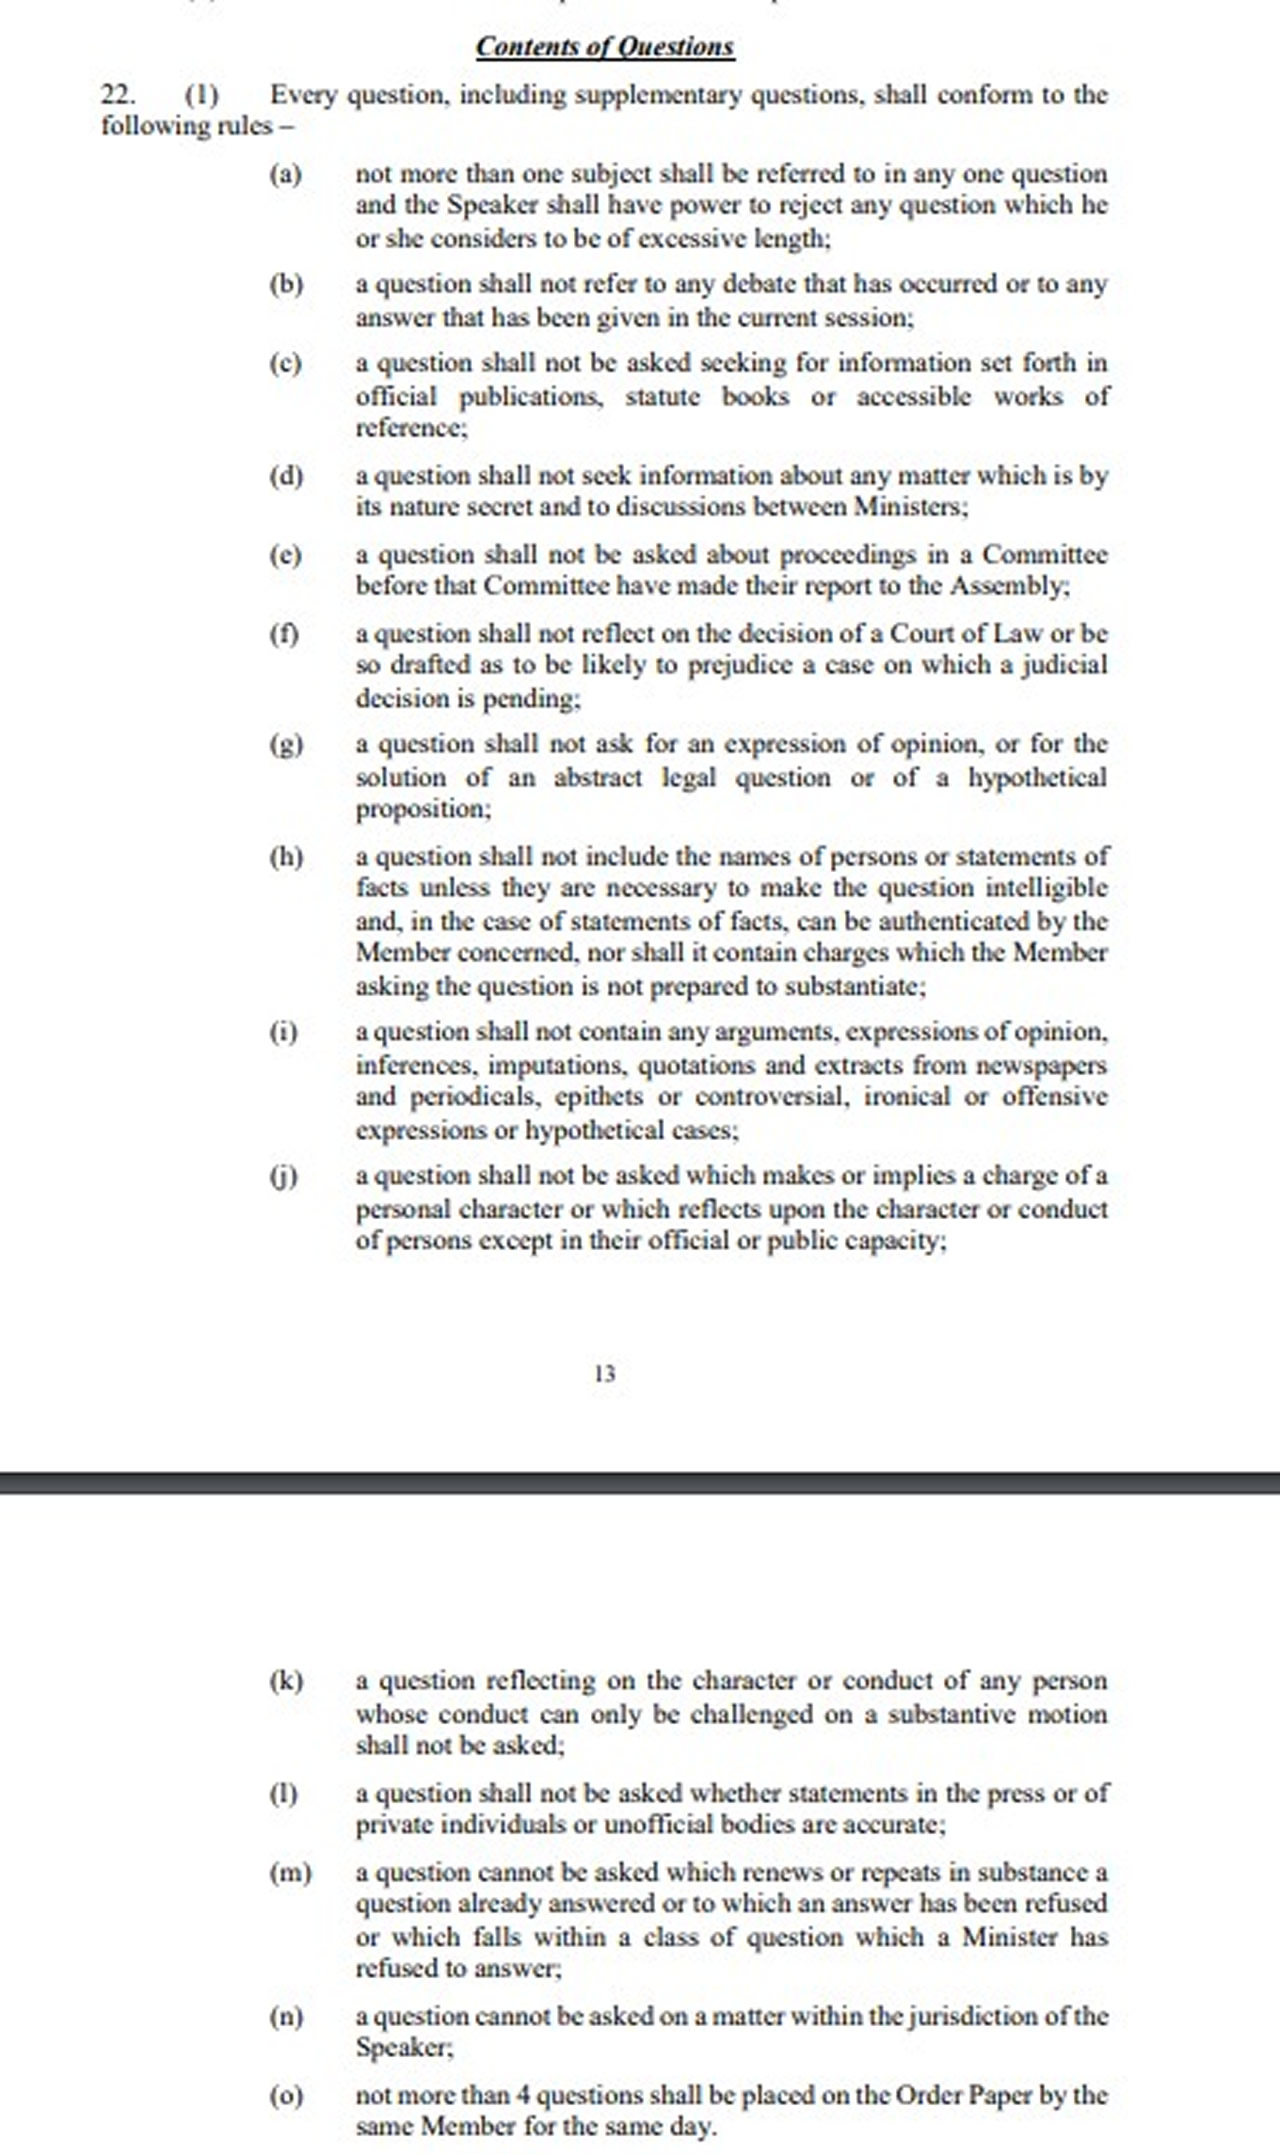 L’article 22(1)(n) des Standing Orders de l’Assemblée nationale est cité pour justifier le rejet de la question du député Osman Mahomed. 